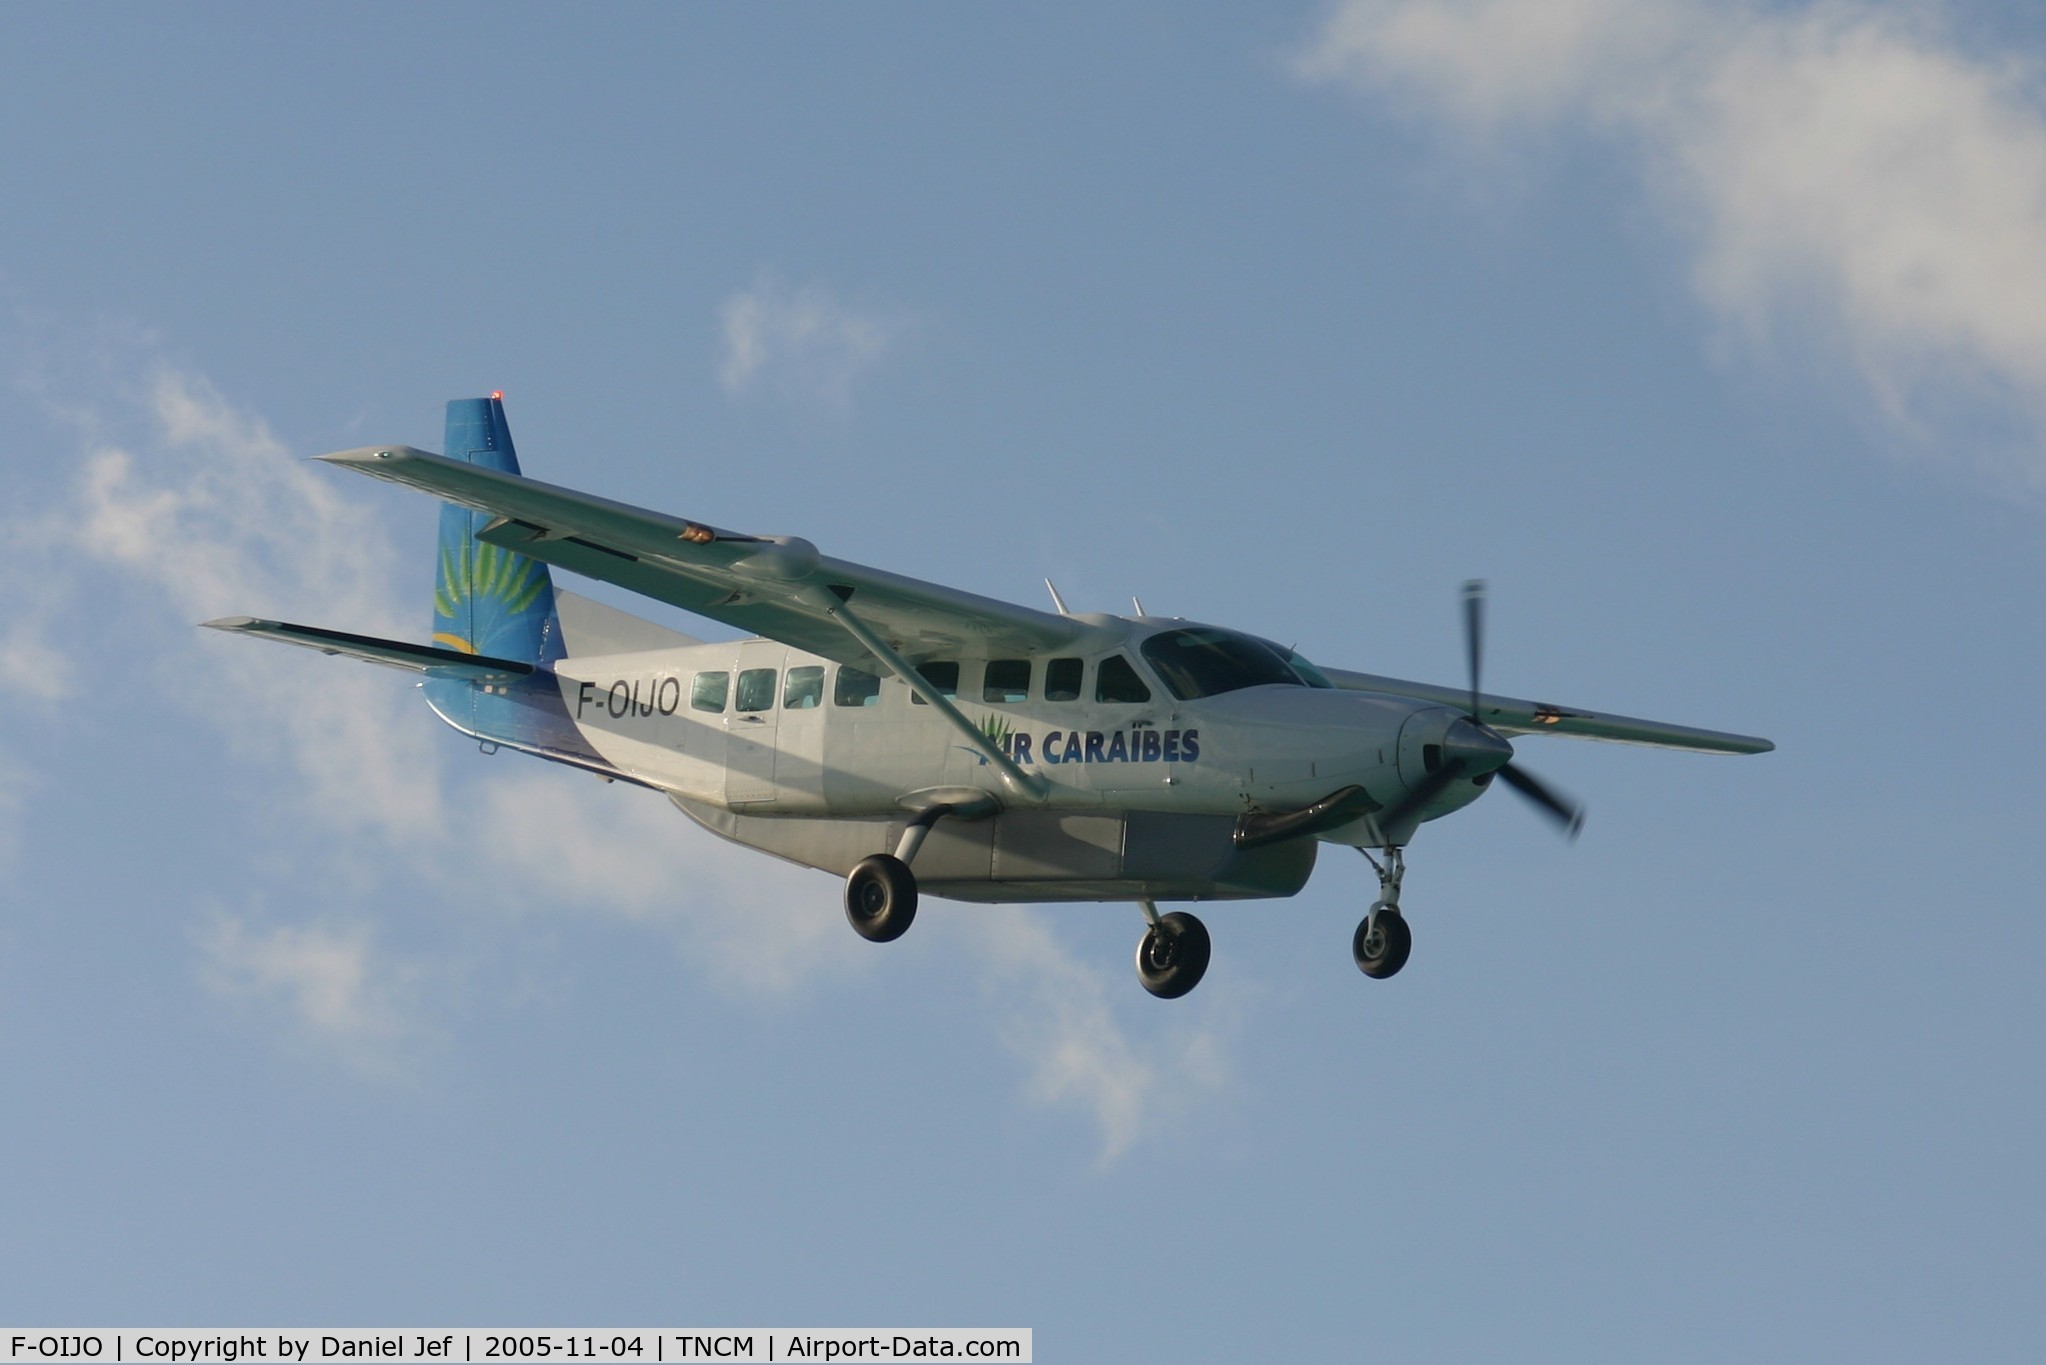 F-OIJO, 2002 Cessna 208B Grand Caravan C/N 208B0961, Landing at juliana